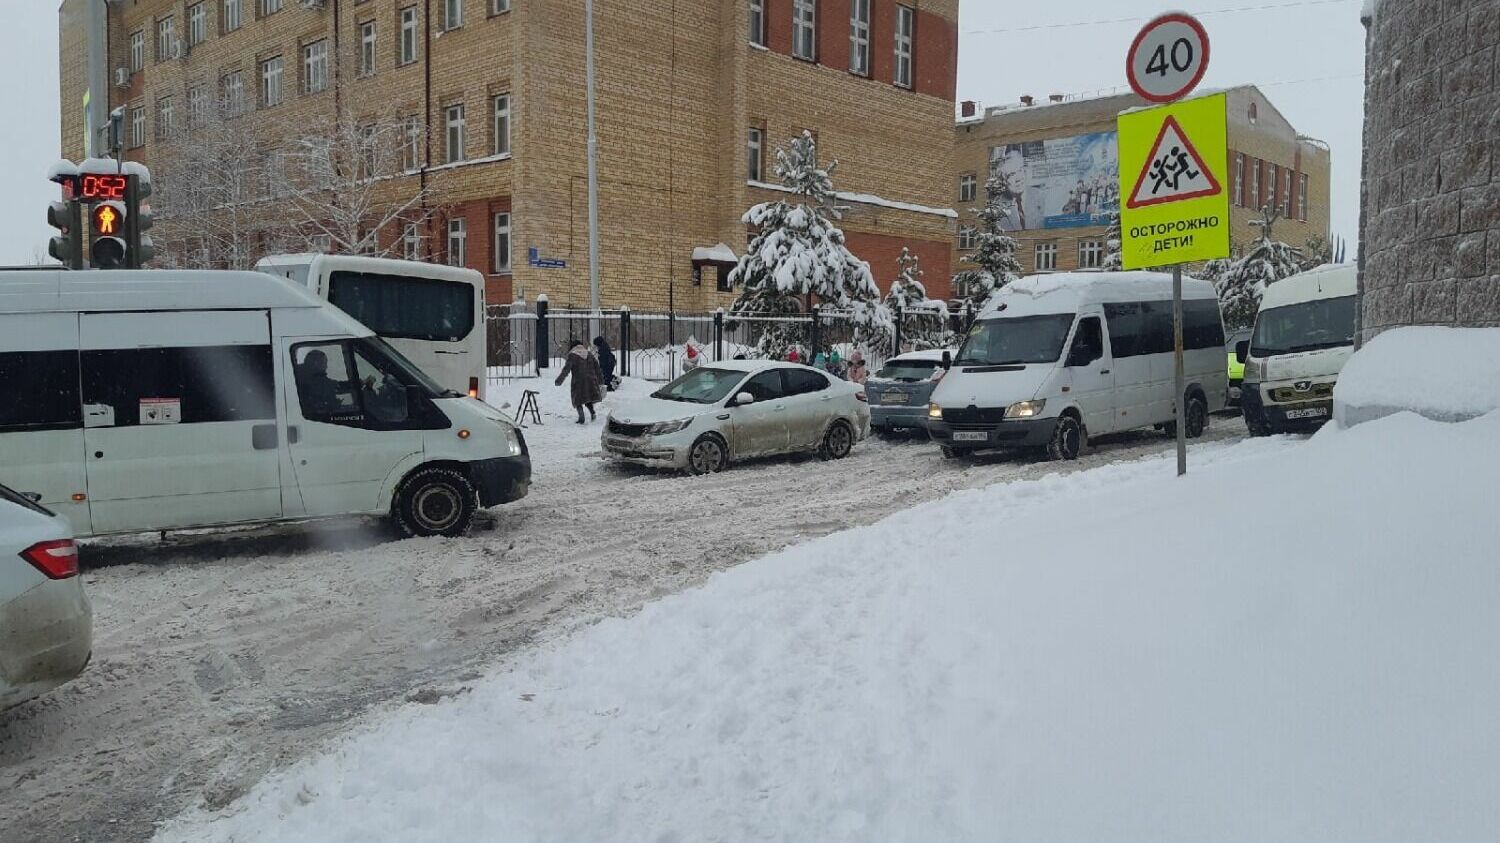 Микроавтобусы с трудом преодолевают снежную кашу